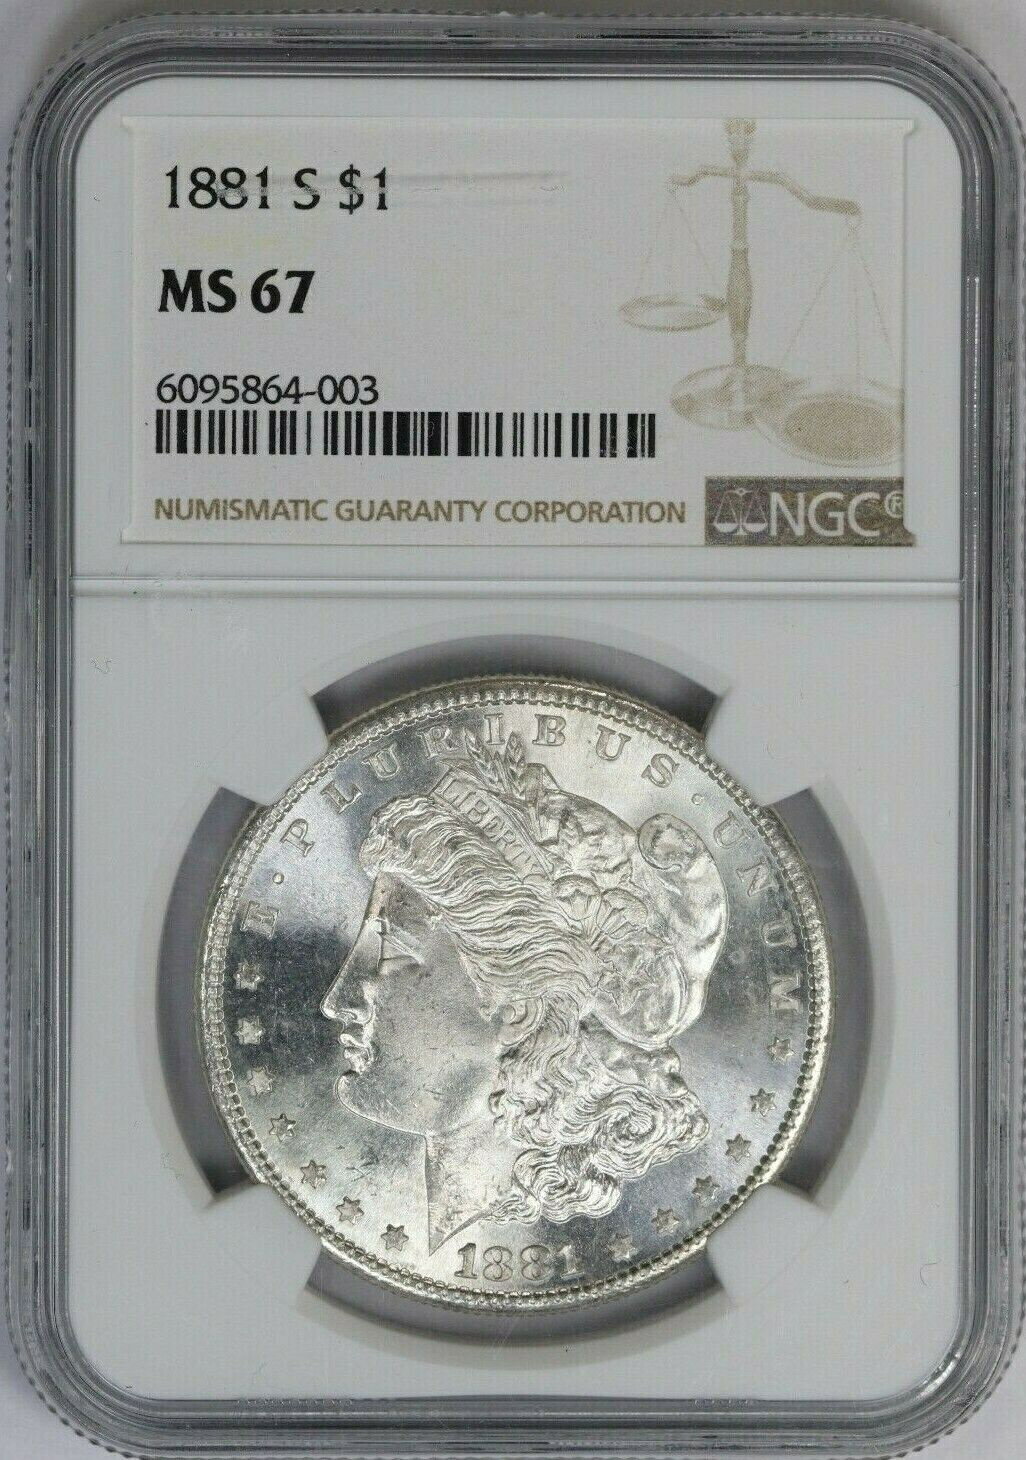  アンティークコイン コイン 金貨 銀貨  1881-S NGC Silver Morgan Dollar MS67 Eye Appealing White Coin